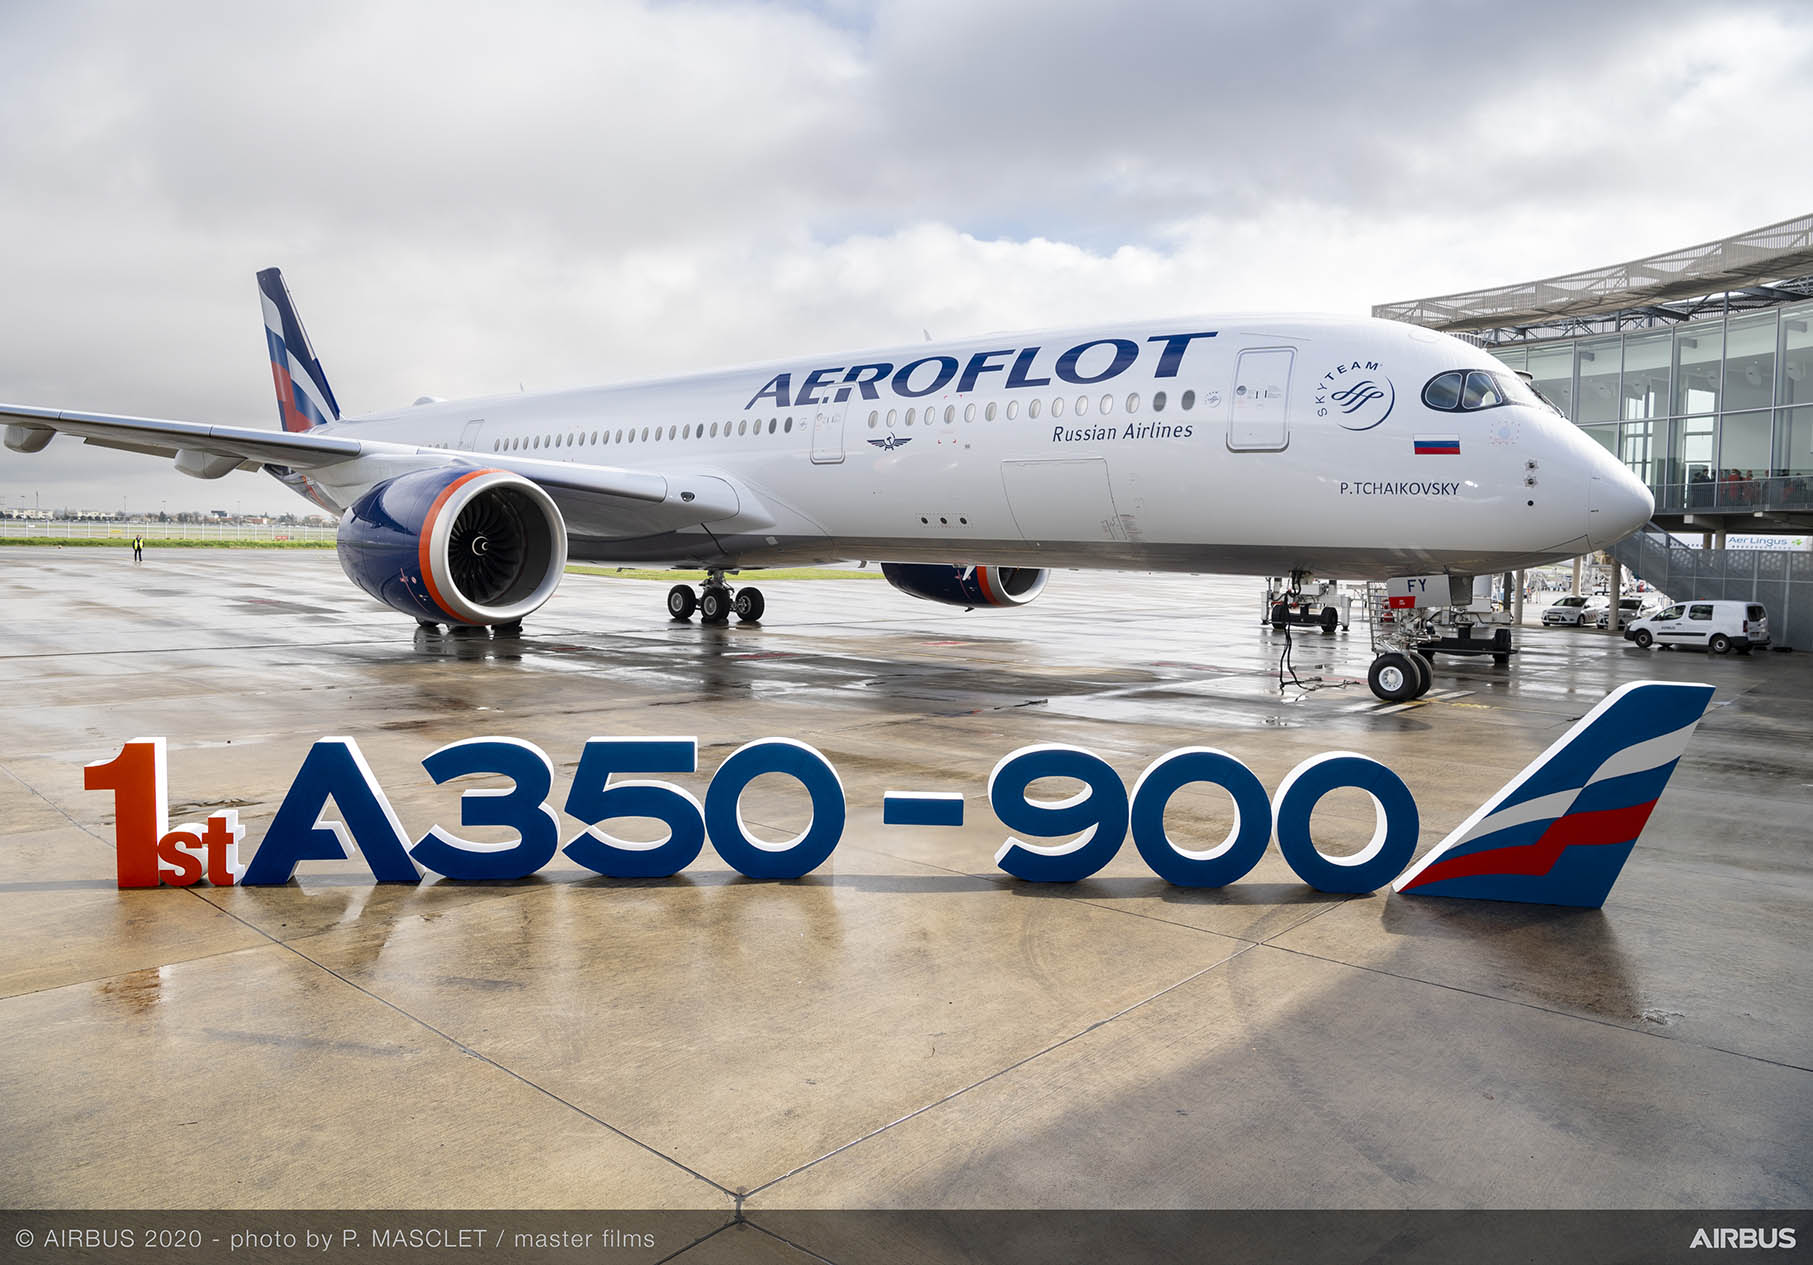 แอโรฟลอตรับมอบ เอ350-900 ลำแรกเข้าฝูงบินแล้ว @Aeroflot @Airbus #A350